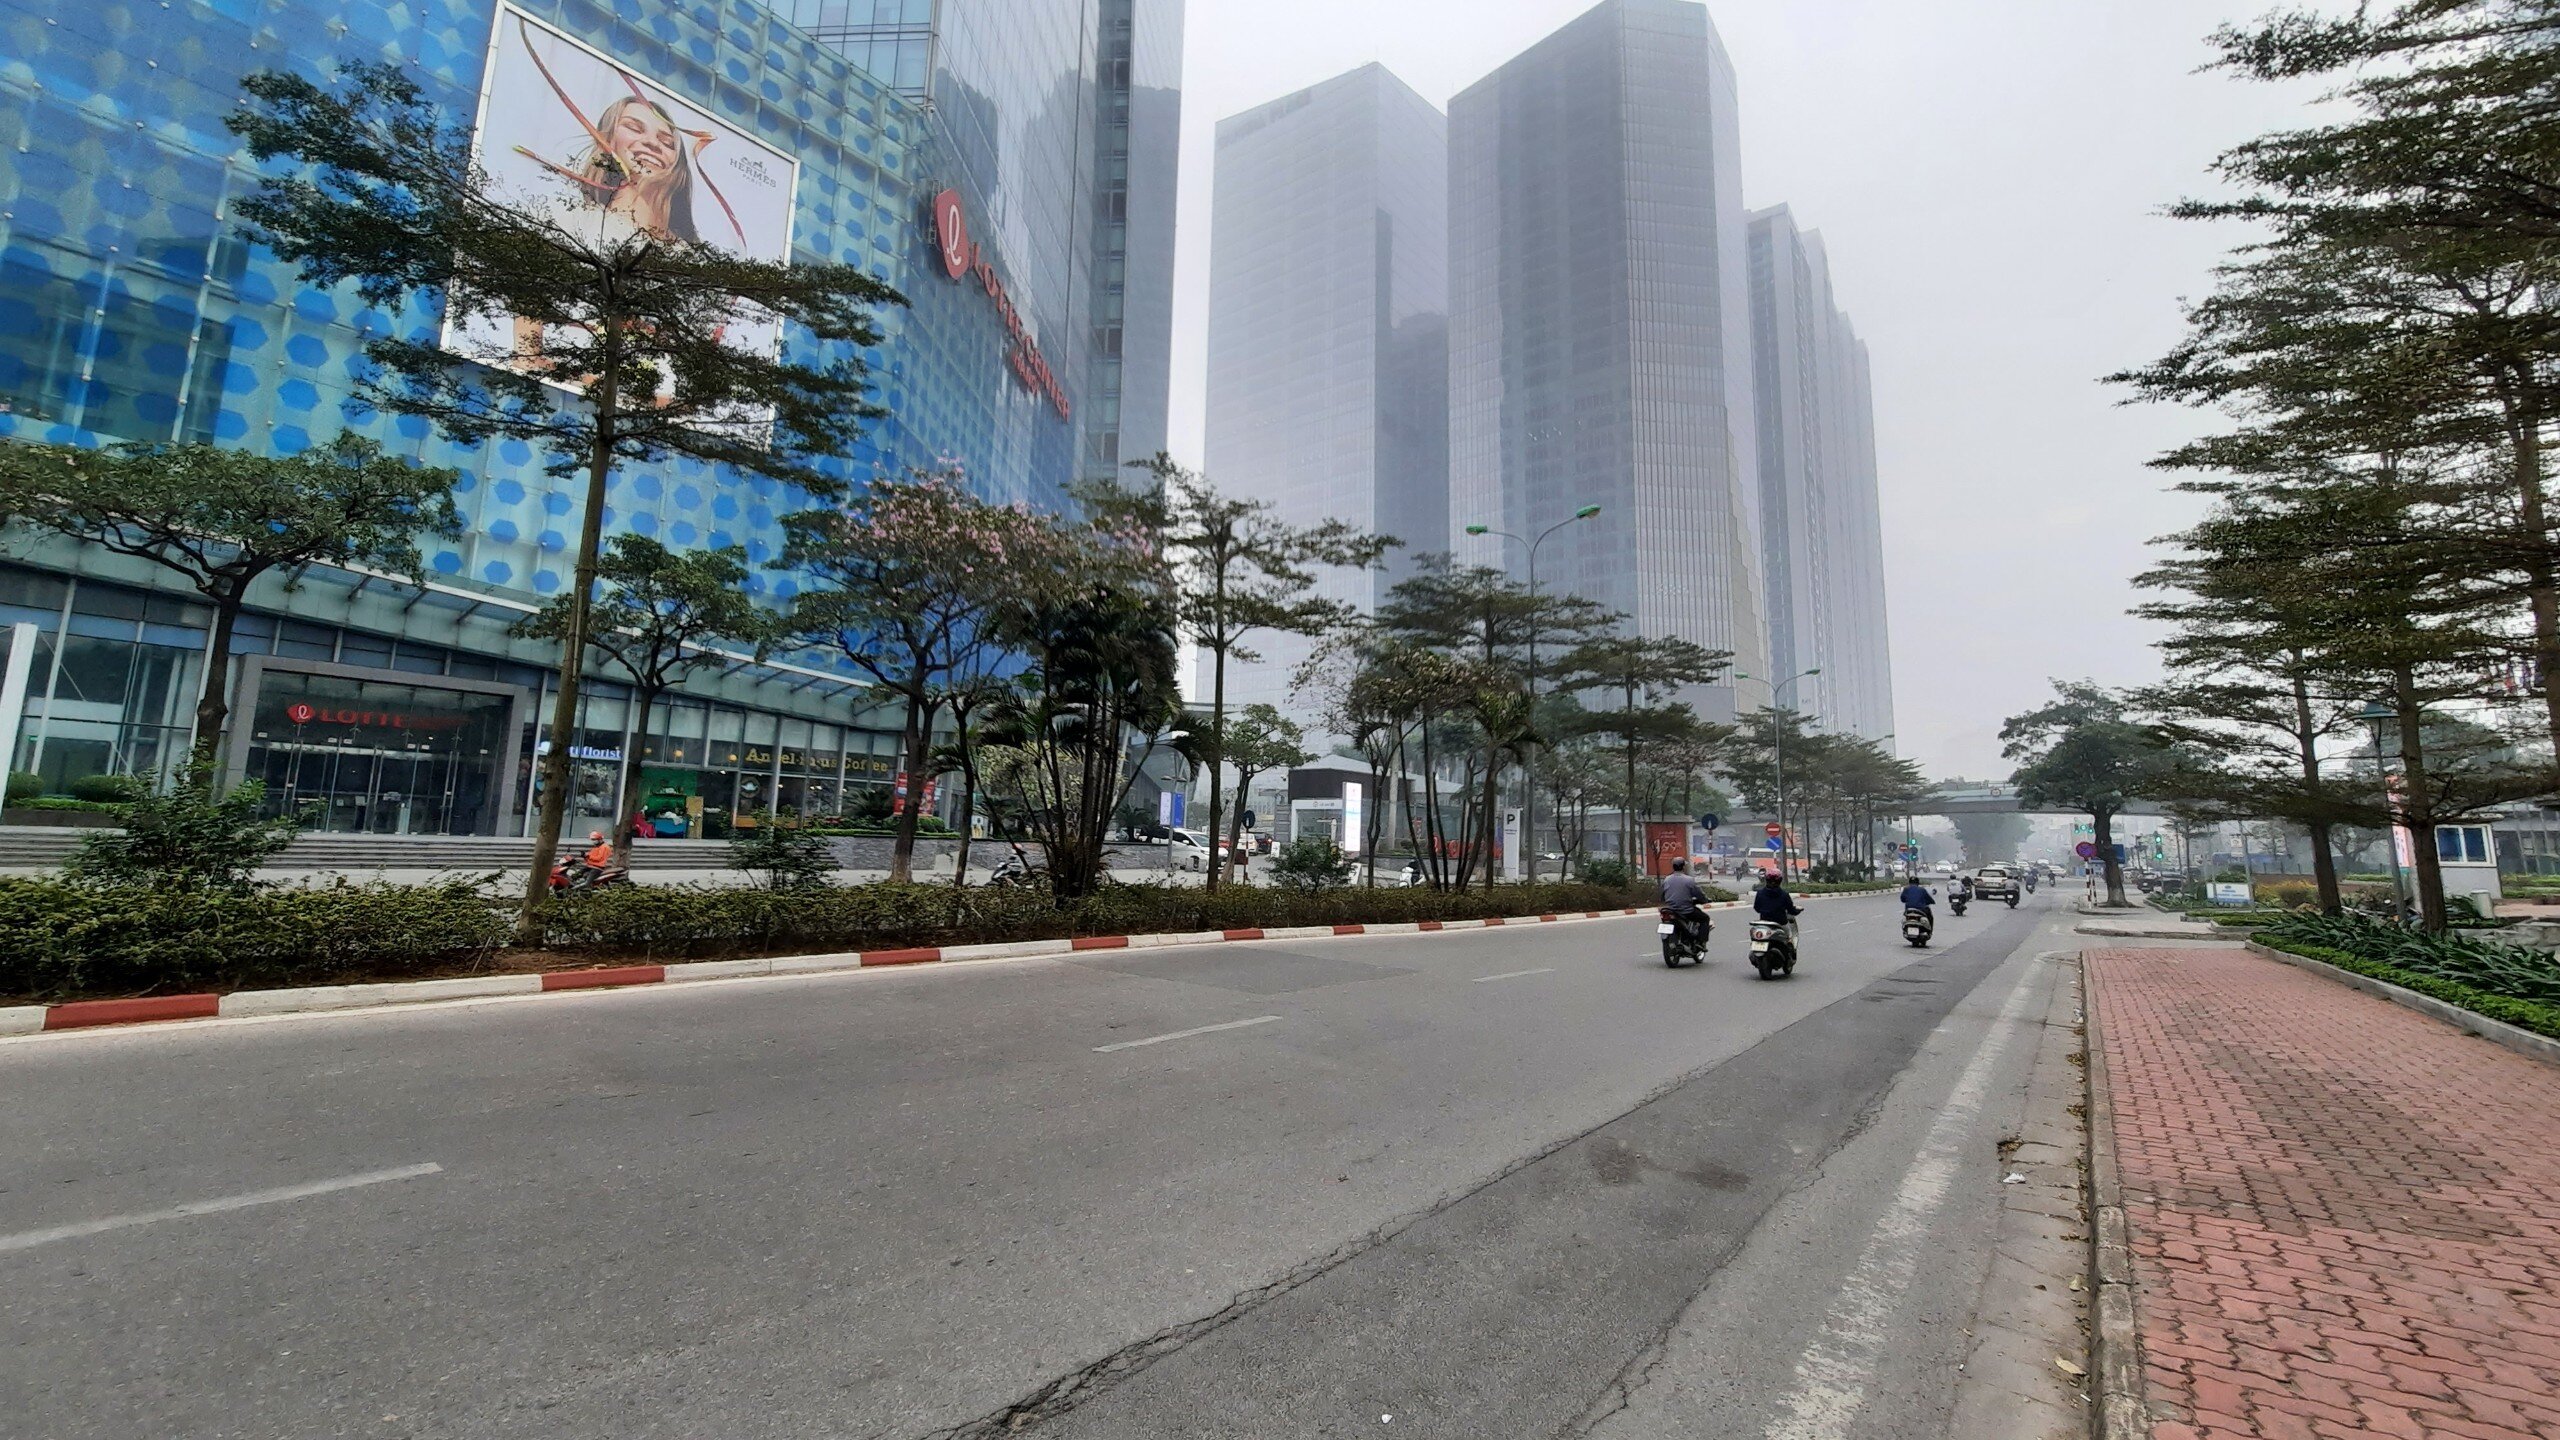 Vài ngày trở lại đây, số ca mắc Covid-19 ở Hà Nội liên tục tăng lên tới hơn 10.000 ca/ngày, đường phố Hà Nội trở nên vắng vẻ hơn dù không có lệnh giãn cách hay hạn chế người dân ra đường.